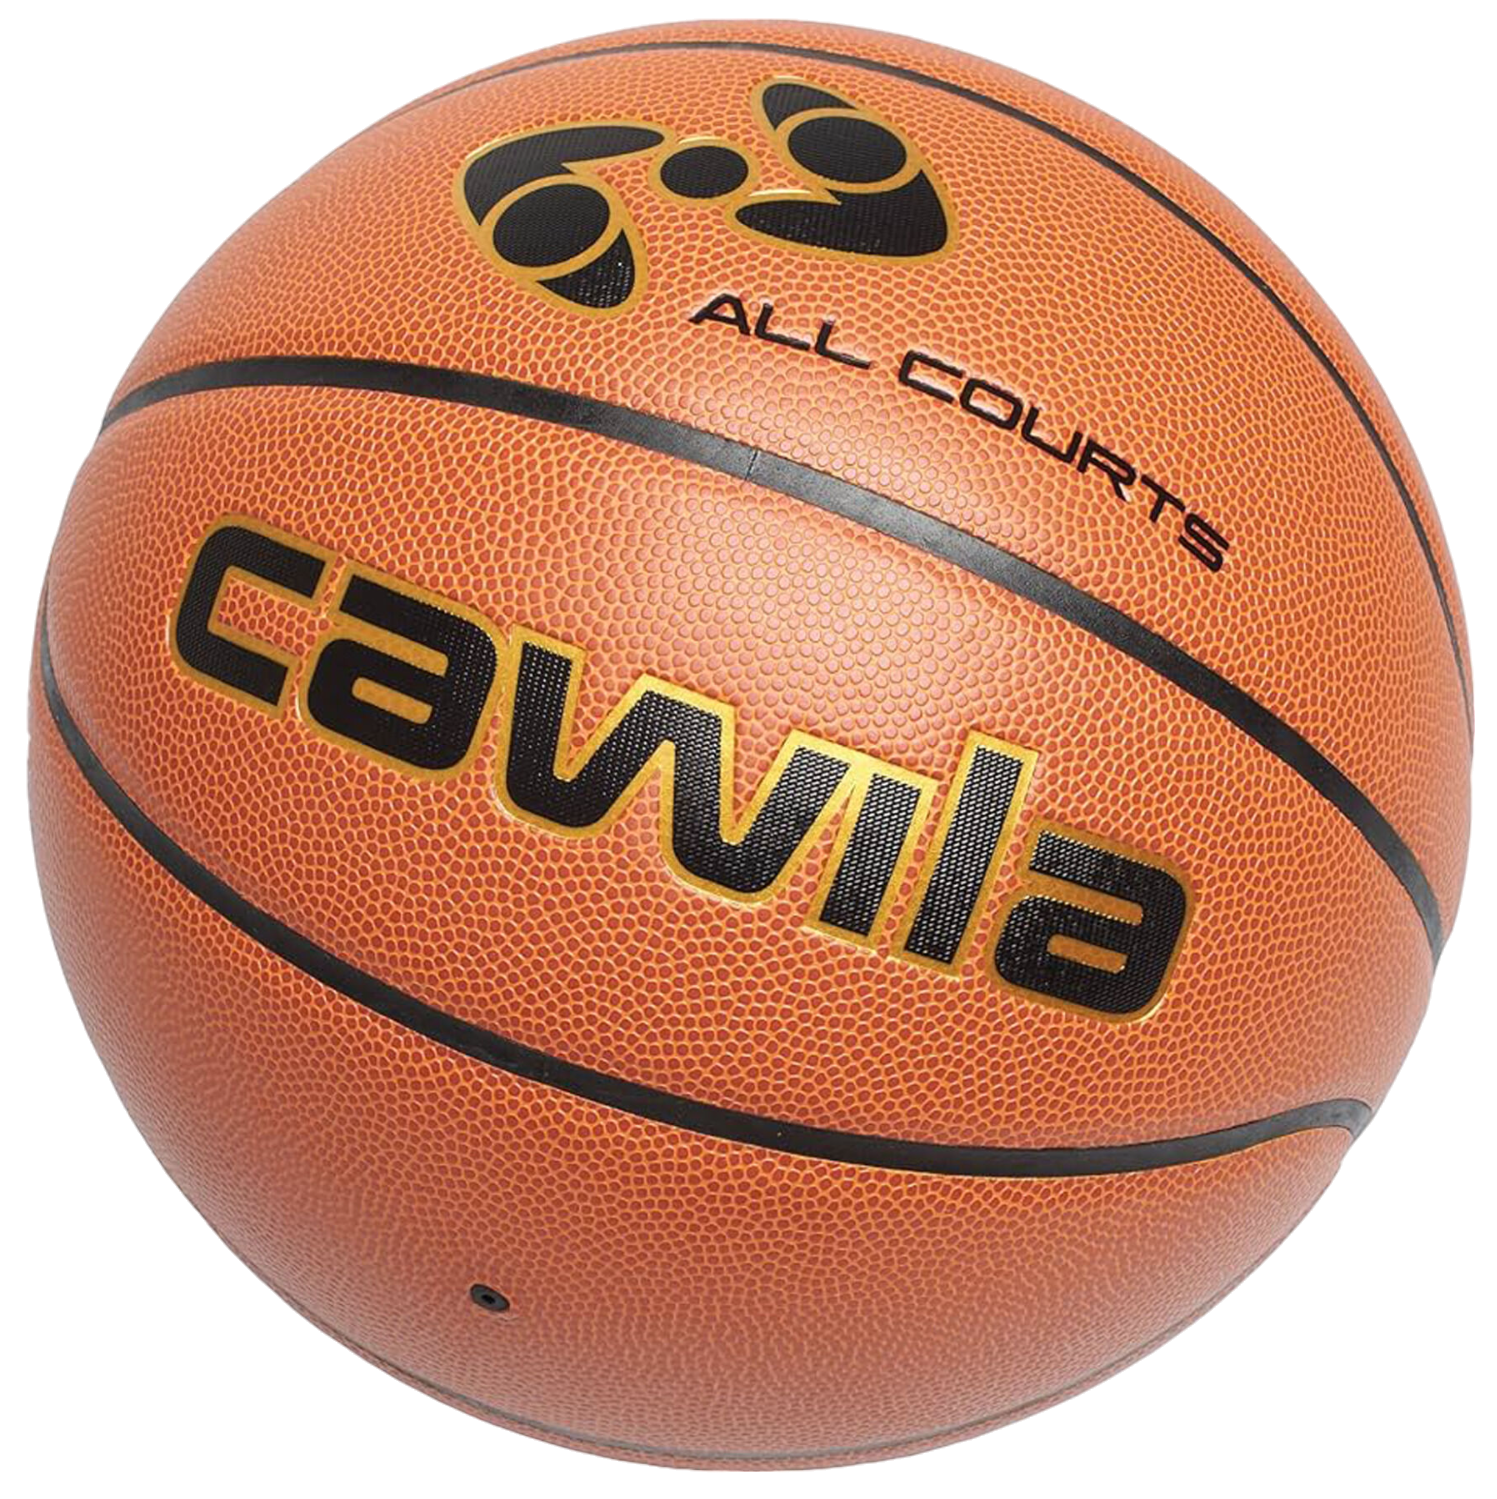 Lopta Cawila Cawila TEAM 4000 All Courts Basketball